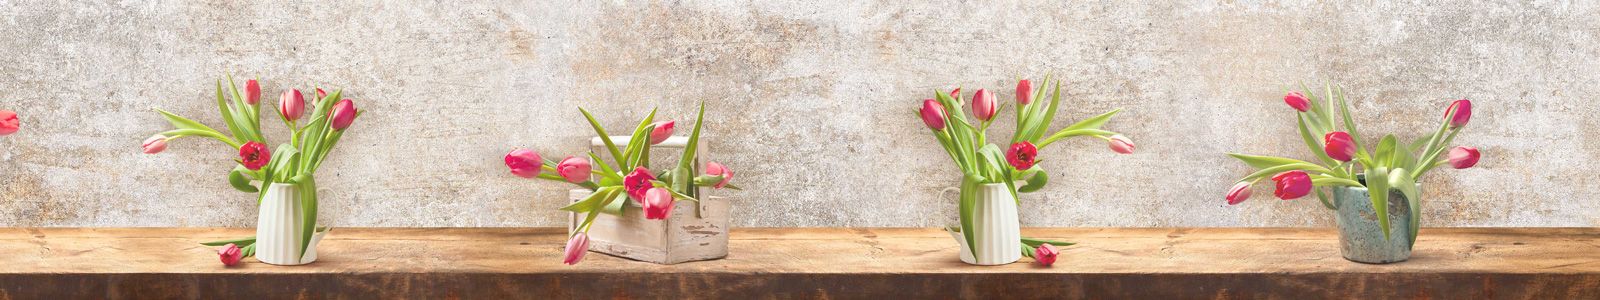 №6716 - Нежные тюльпаны на столе